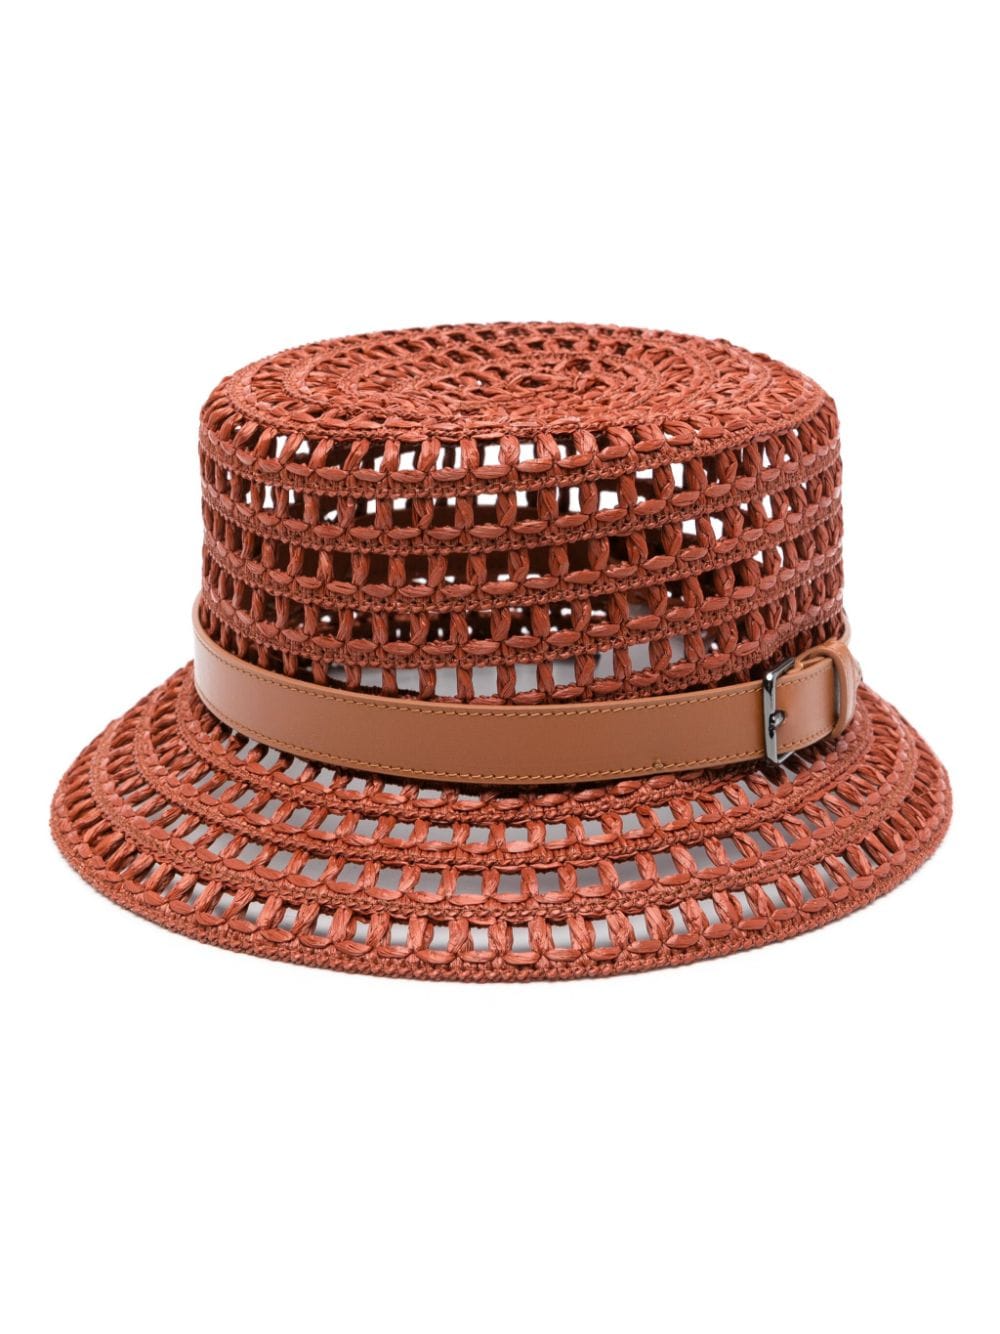 Max Mara leather-detail crochet hat - Brown von Max Mara